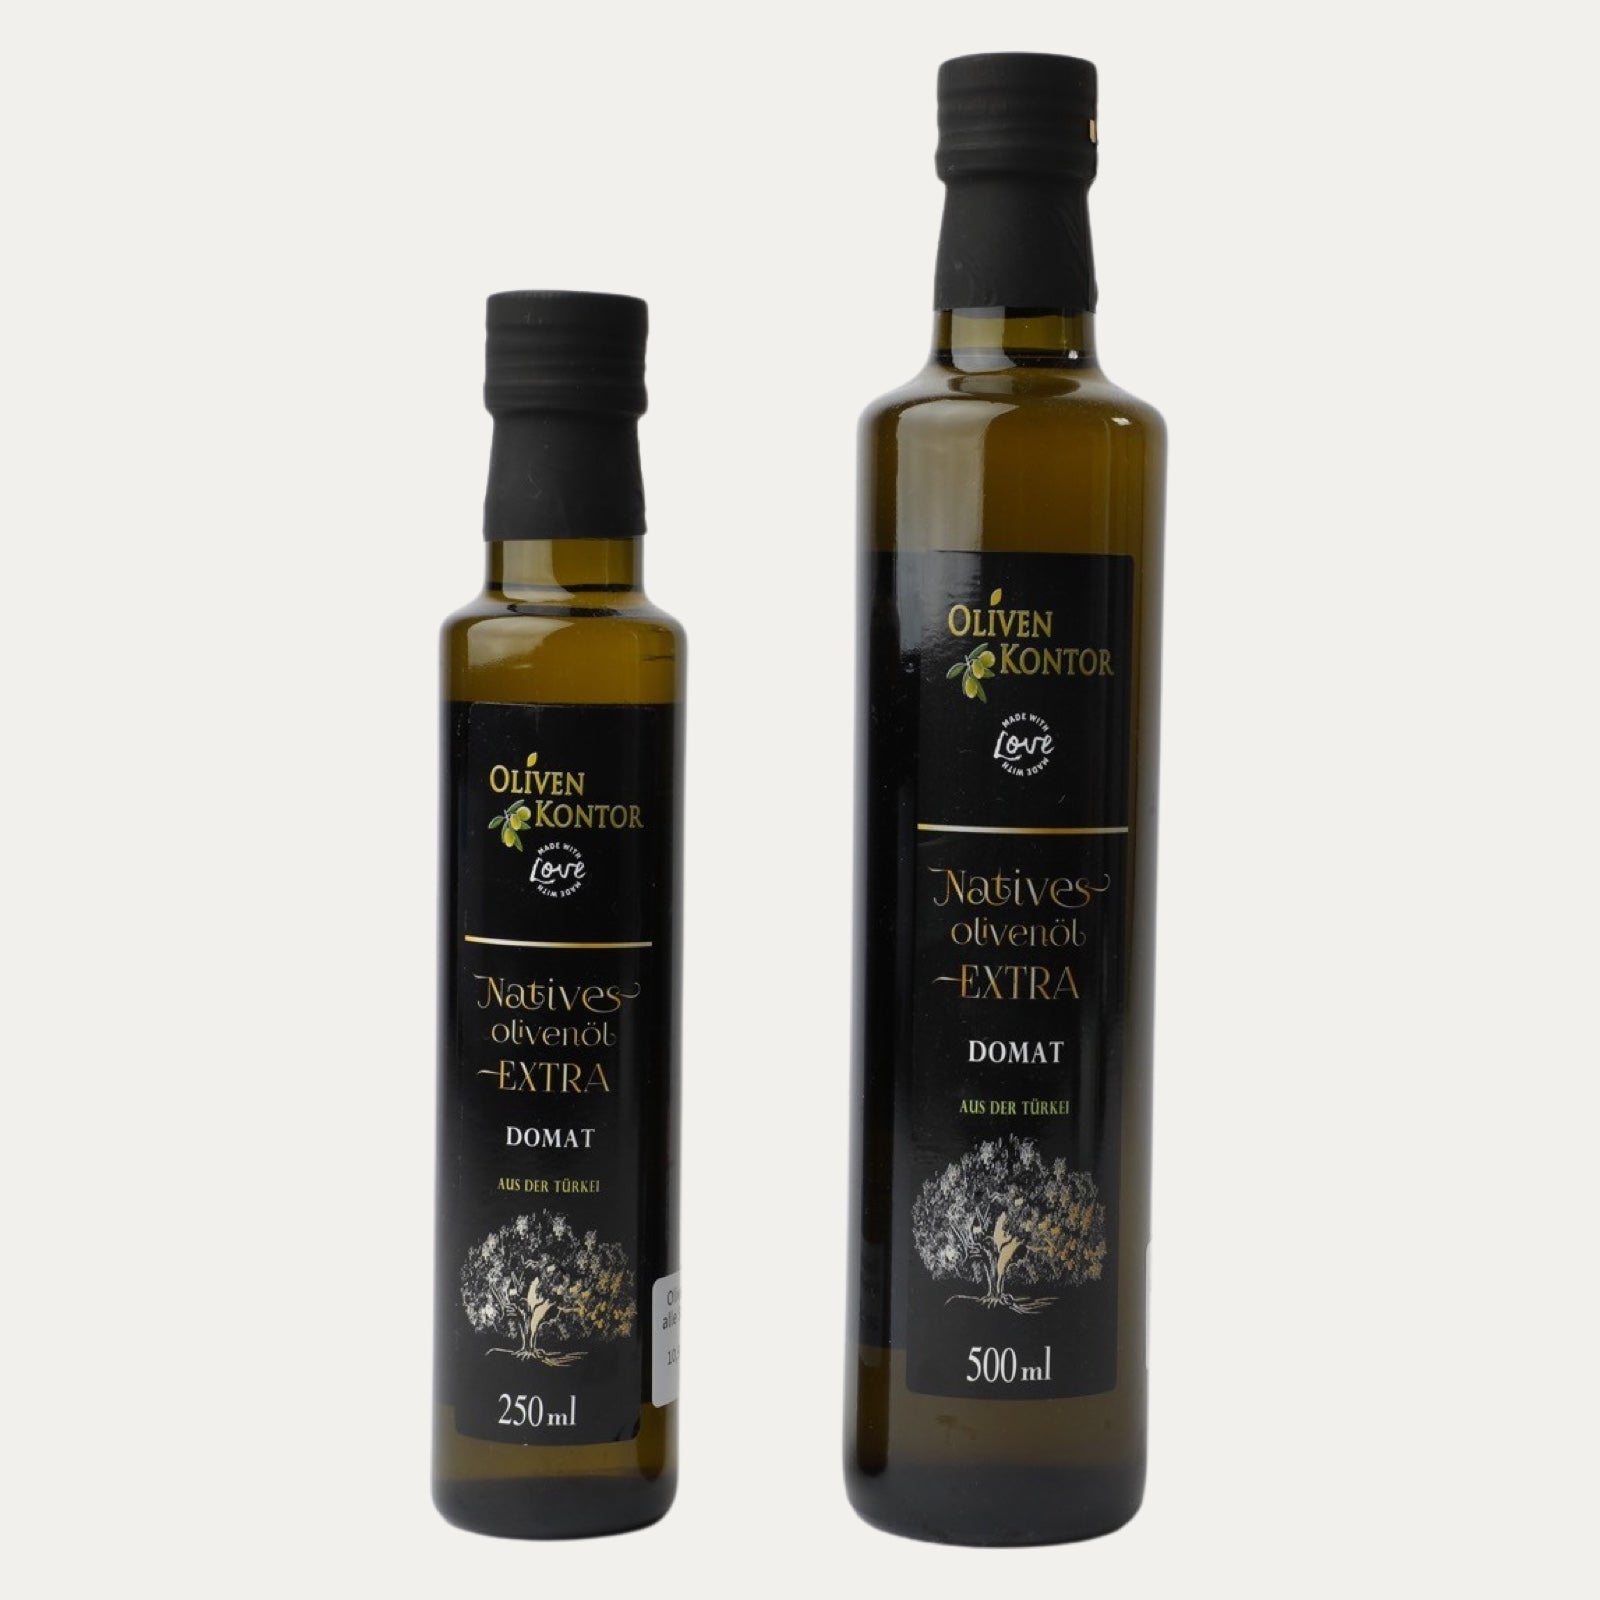 Domat – Olivenöl – OlivenKontor